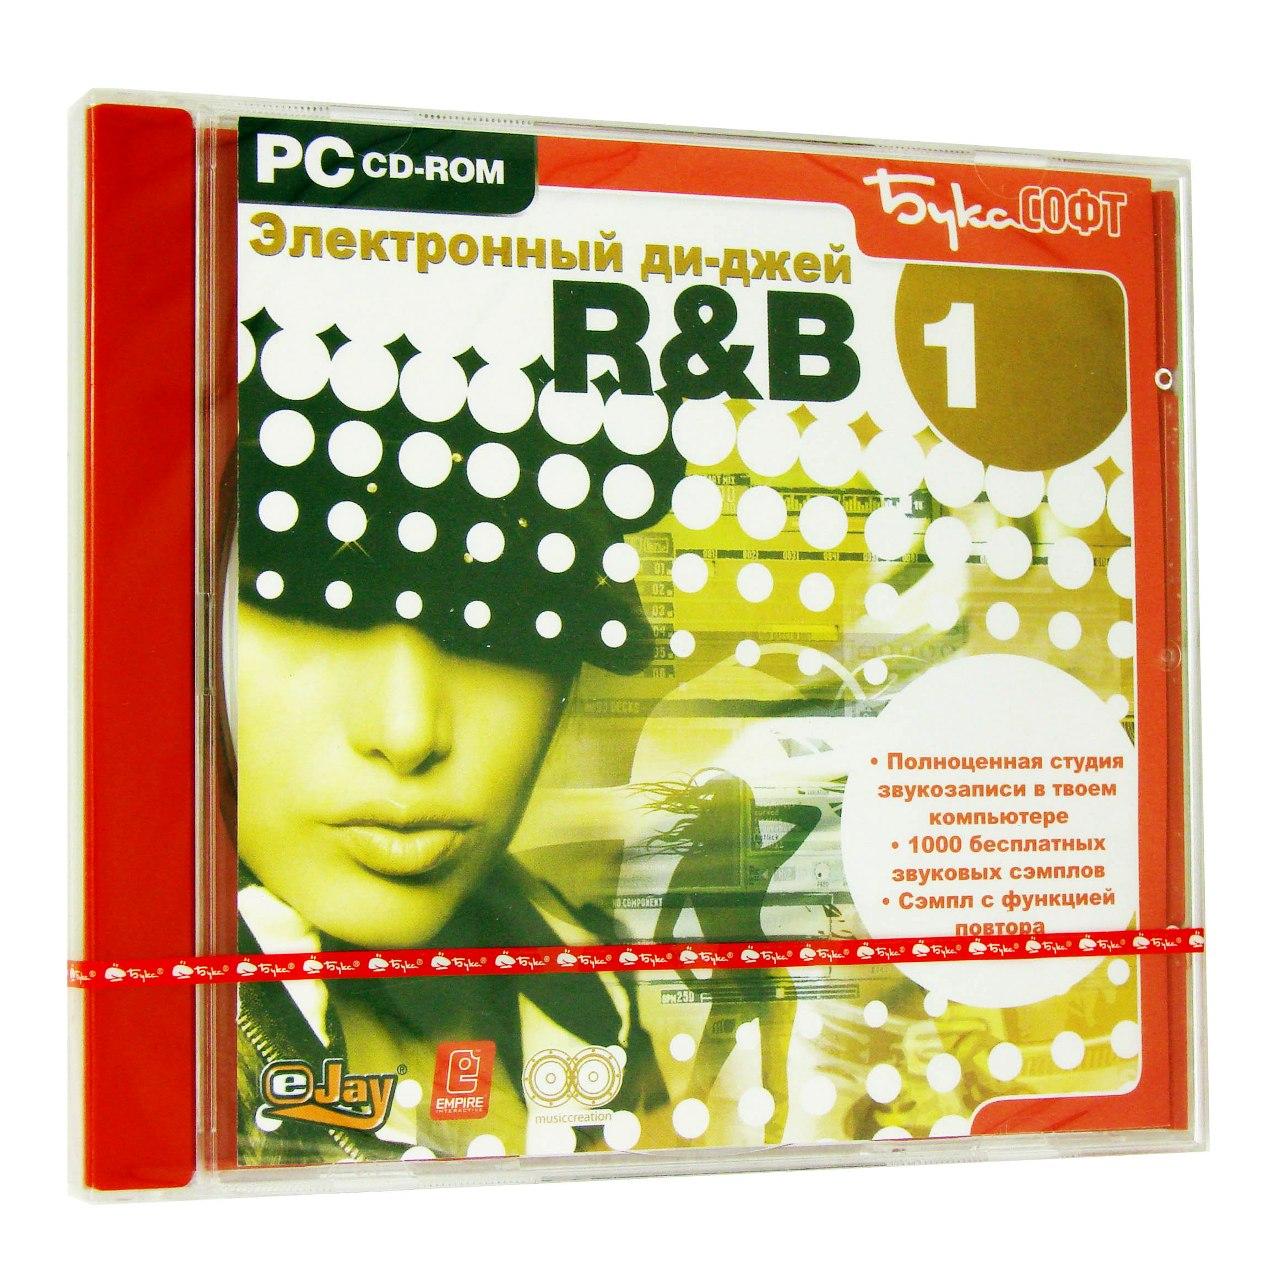 Компьютерный компакт-диск Электронный ди-джей R&B 1 (PC), фирма "Бука", 1CD